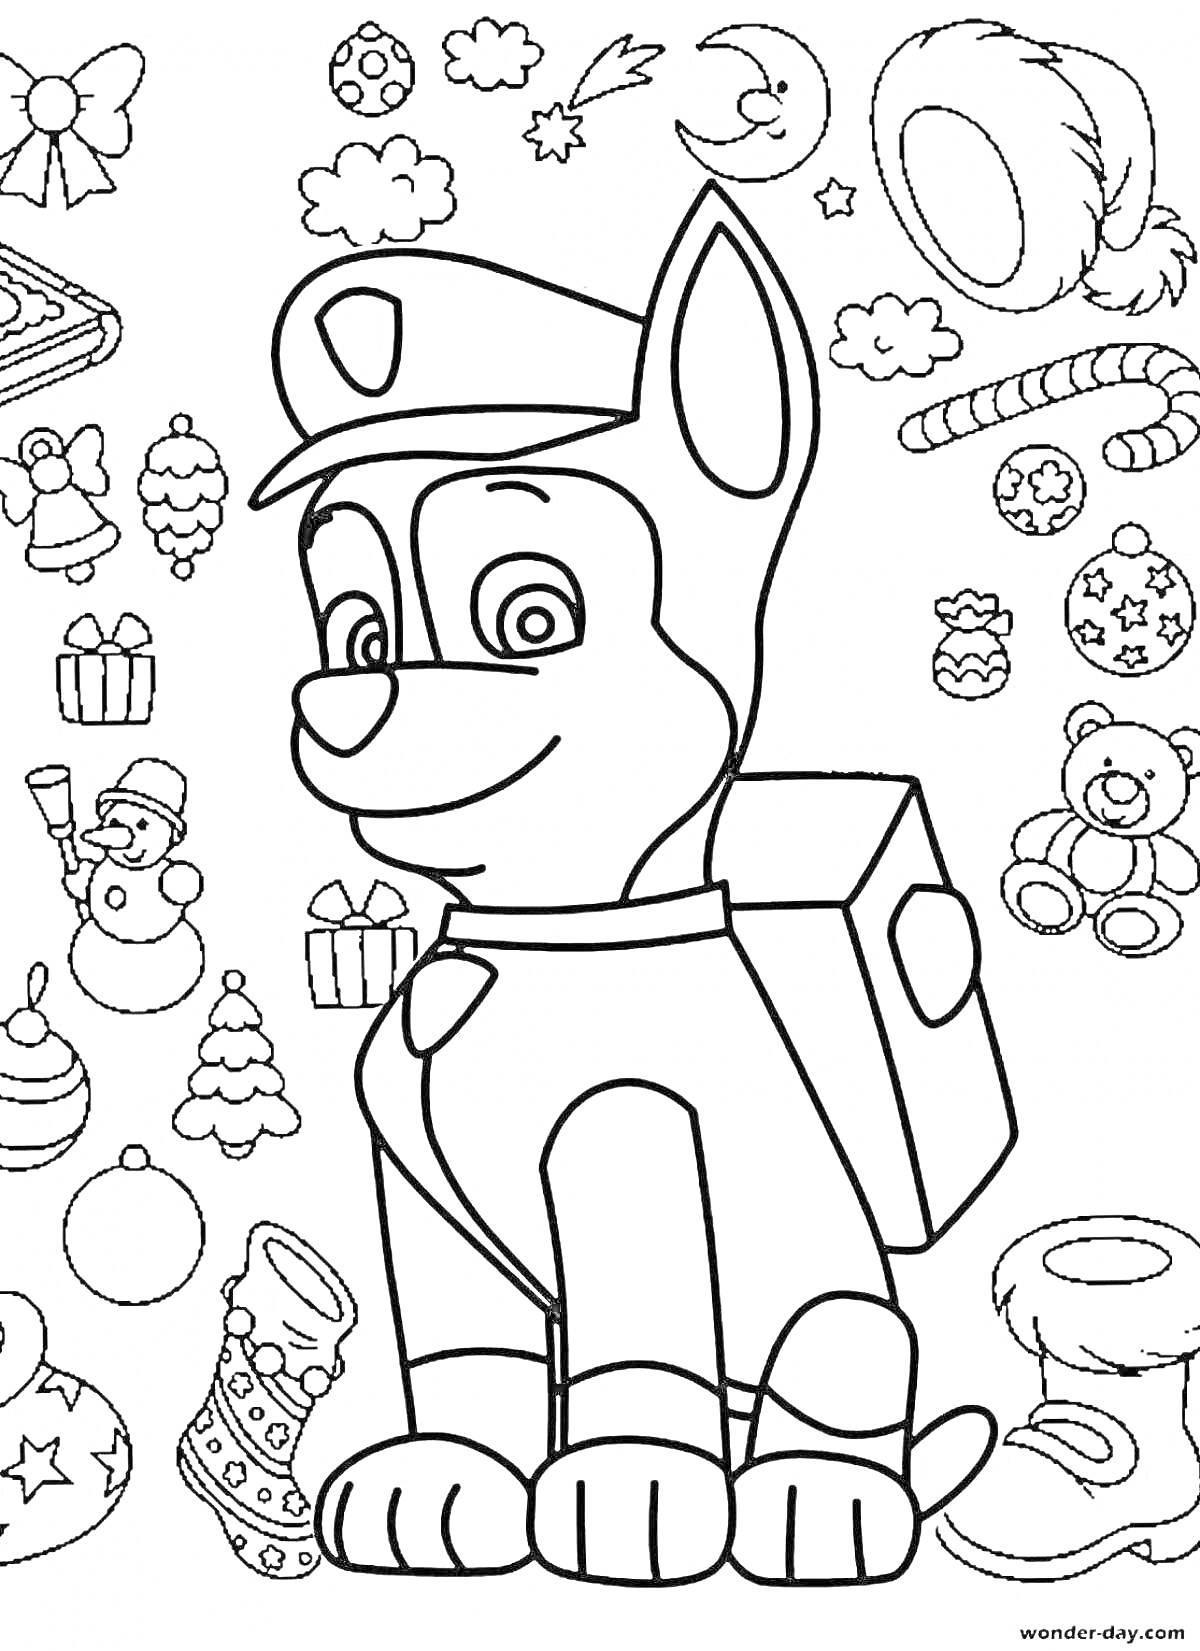 Раскраска Щенячий патруль - Новогодний щенок с новогодними украшениями, подарками, елками и другими праздничными элементами